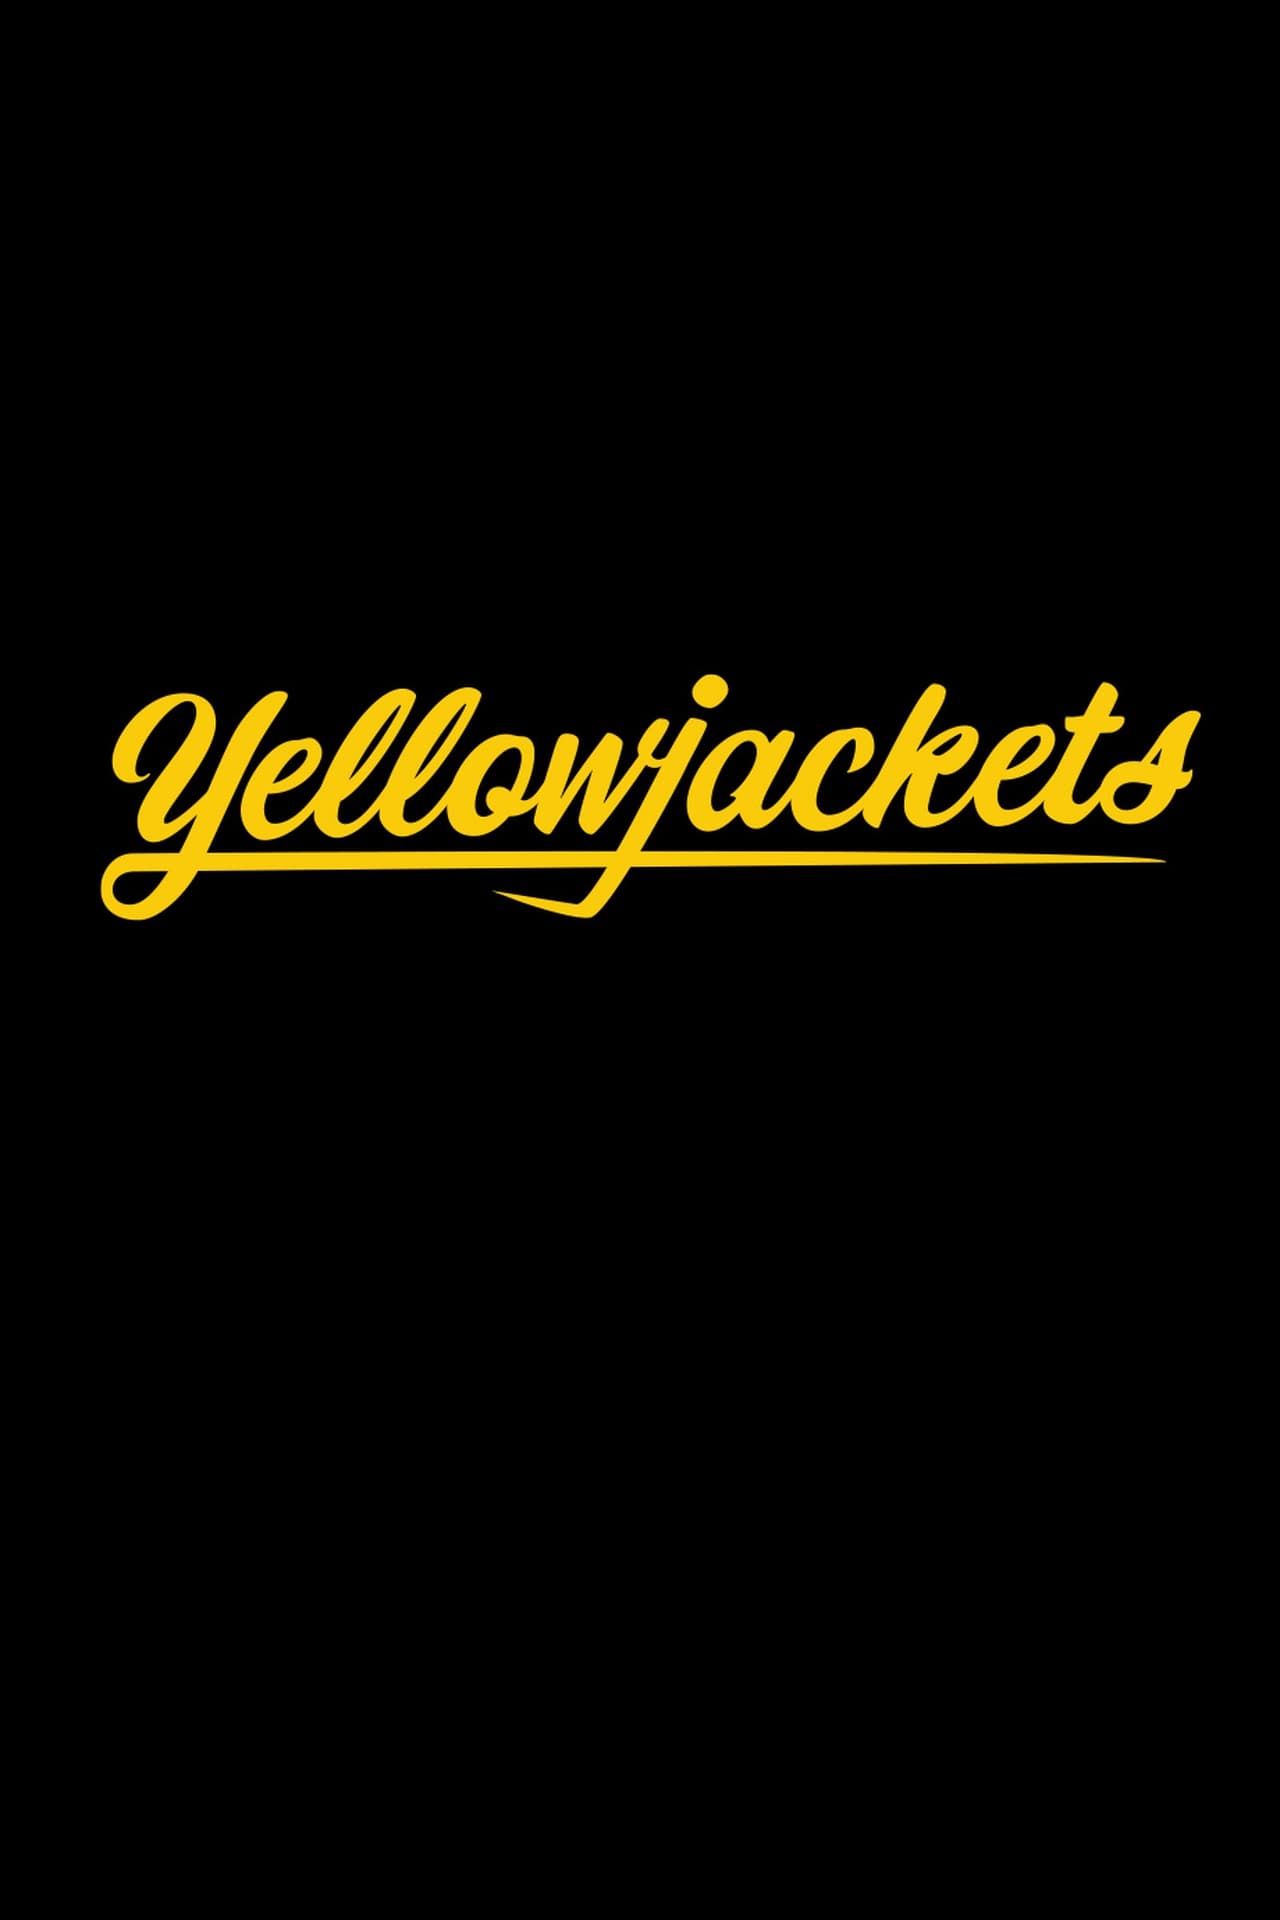 Yellowjackets (season 1)